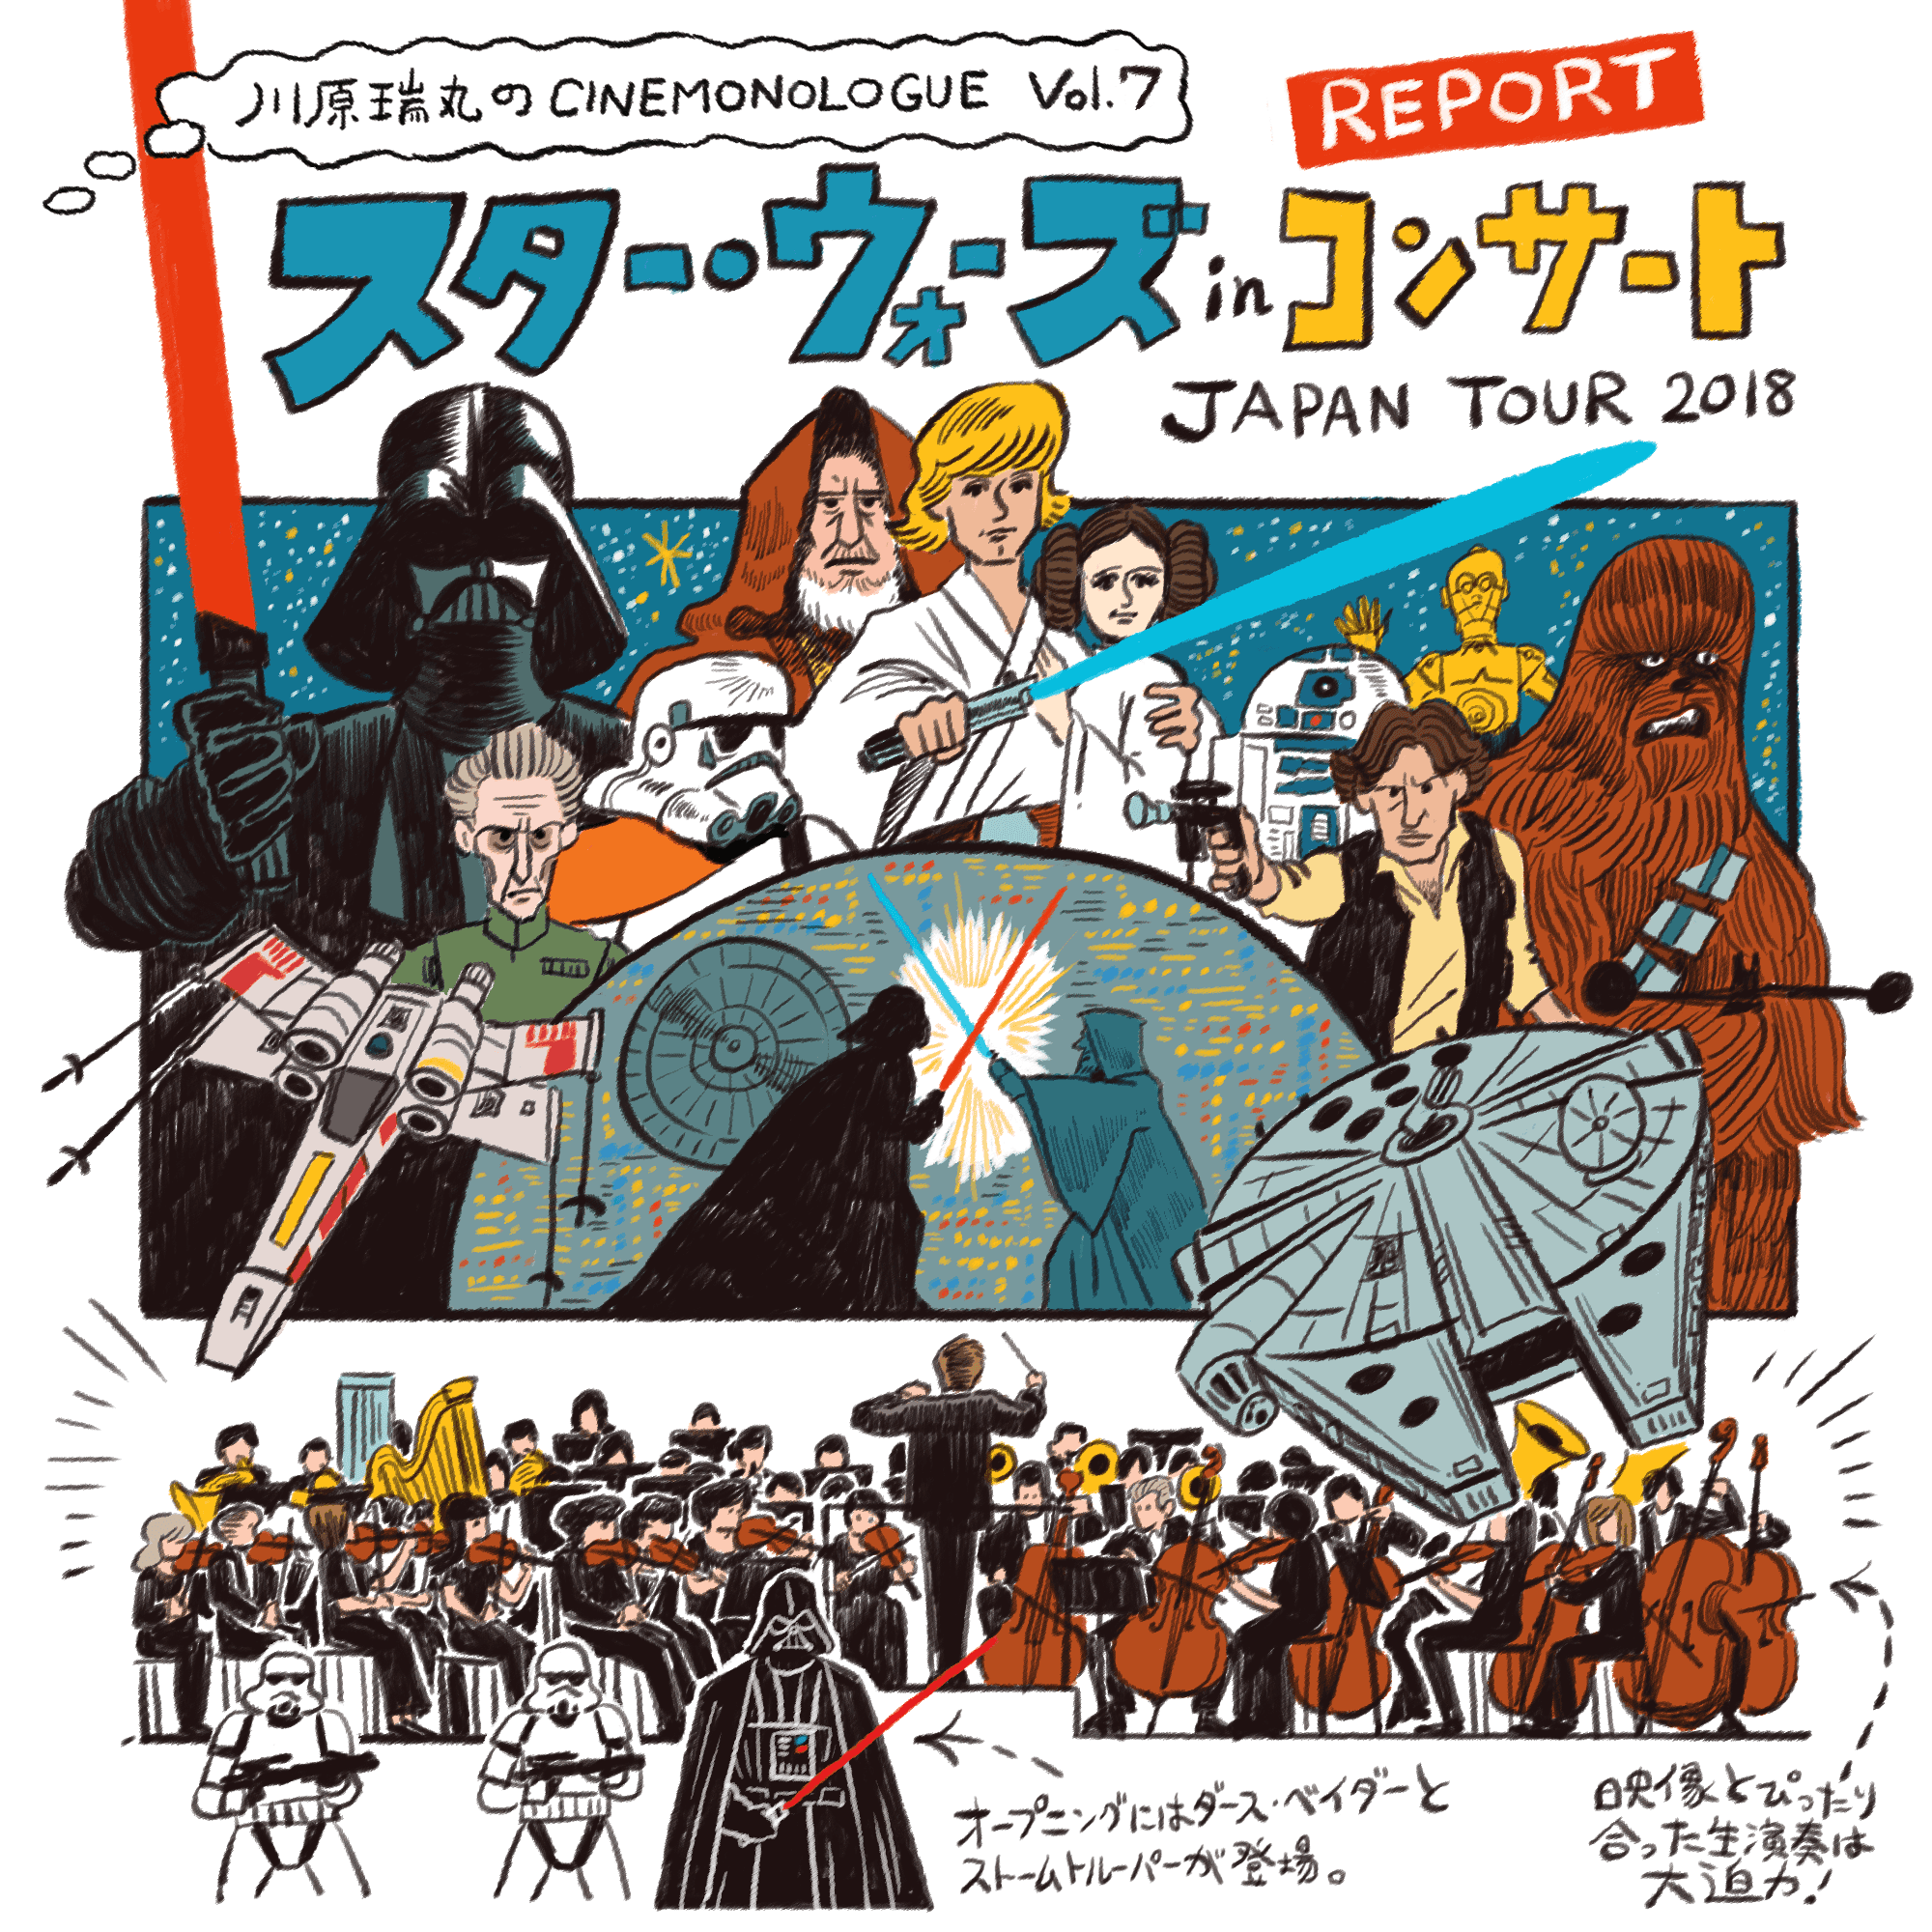 スター・ウォーズ in コンサート Japan Tour 2018 - Report【川原瑞丸のCINEMONOLOGUE Vol.7】